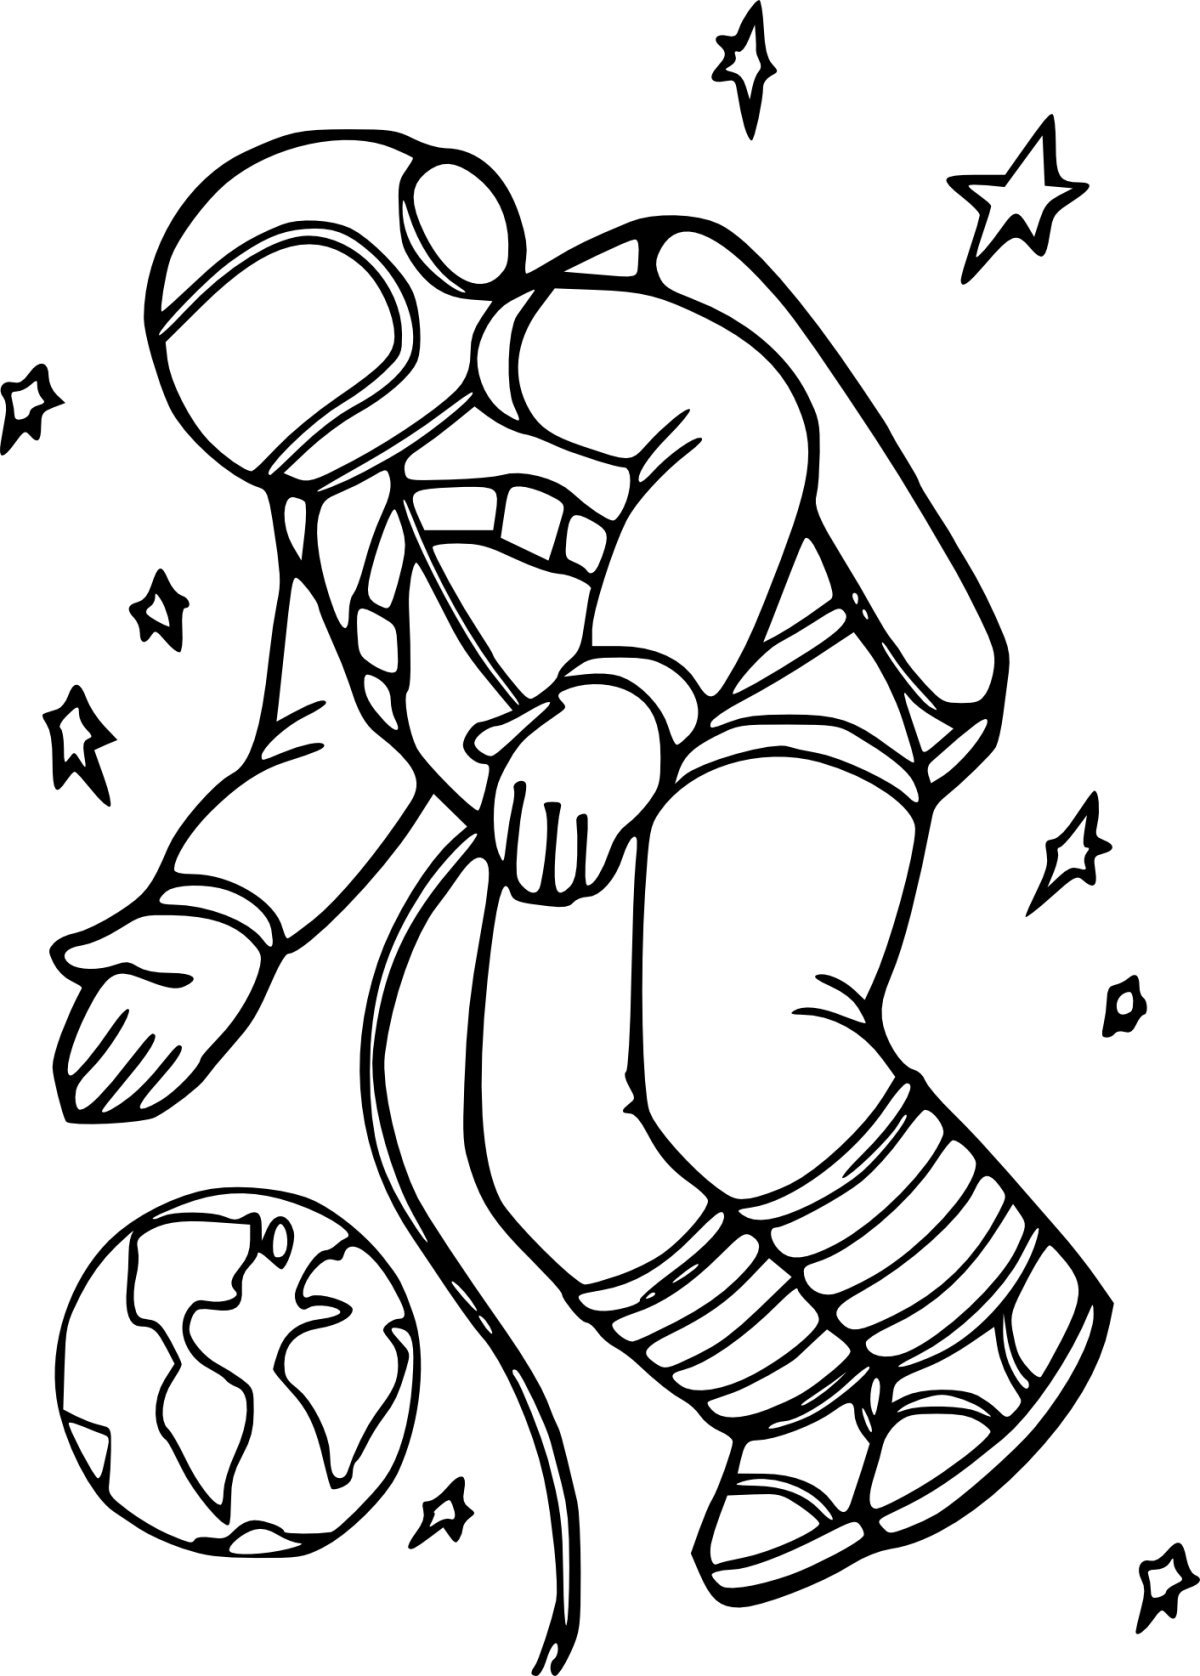 Раскраски 12 апреля день космонавтики для детей. Космос раскраска для детей. Космонавт раскраска для детей. Космонавтика раскраски для детей. Раскраска. В космосе.